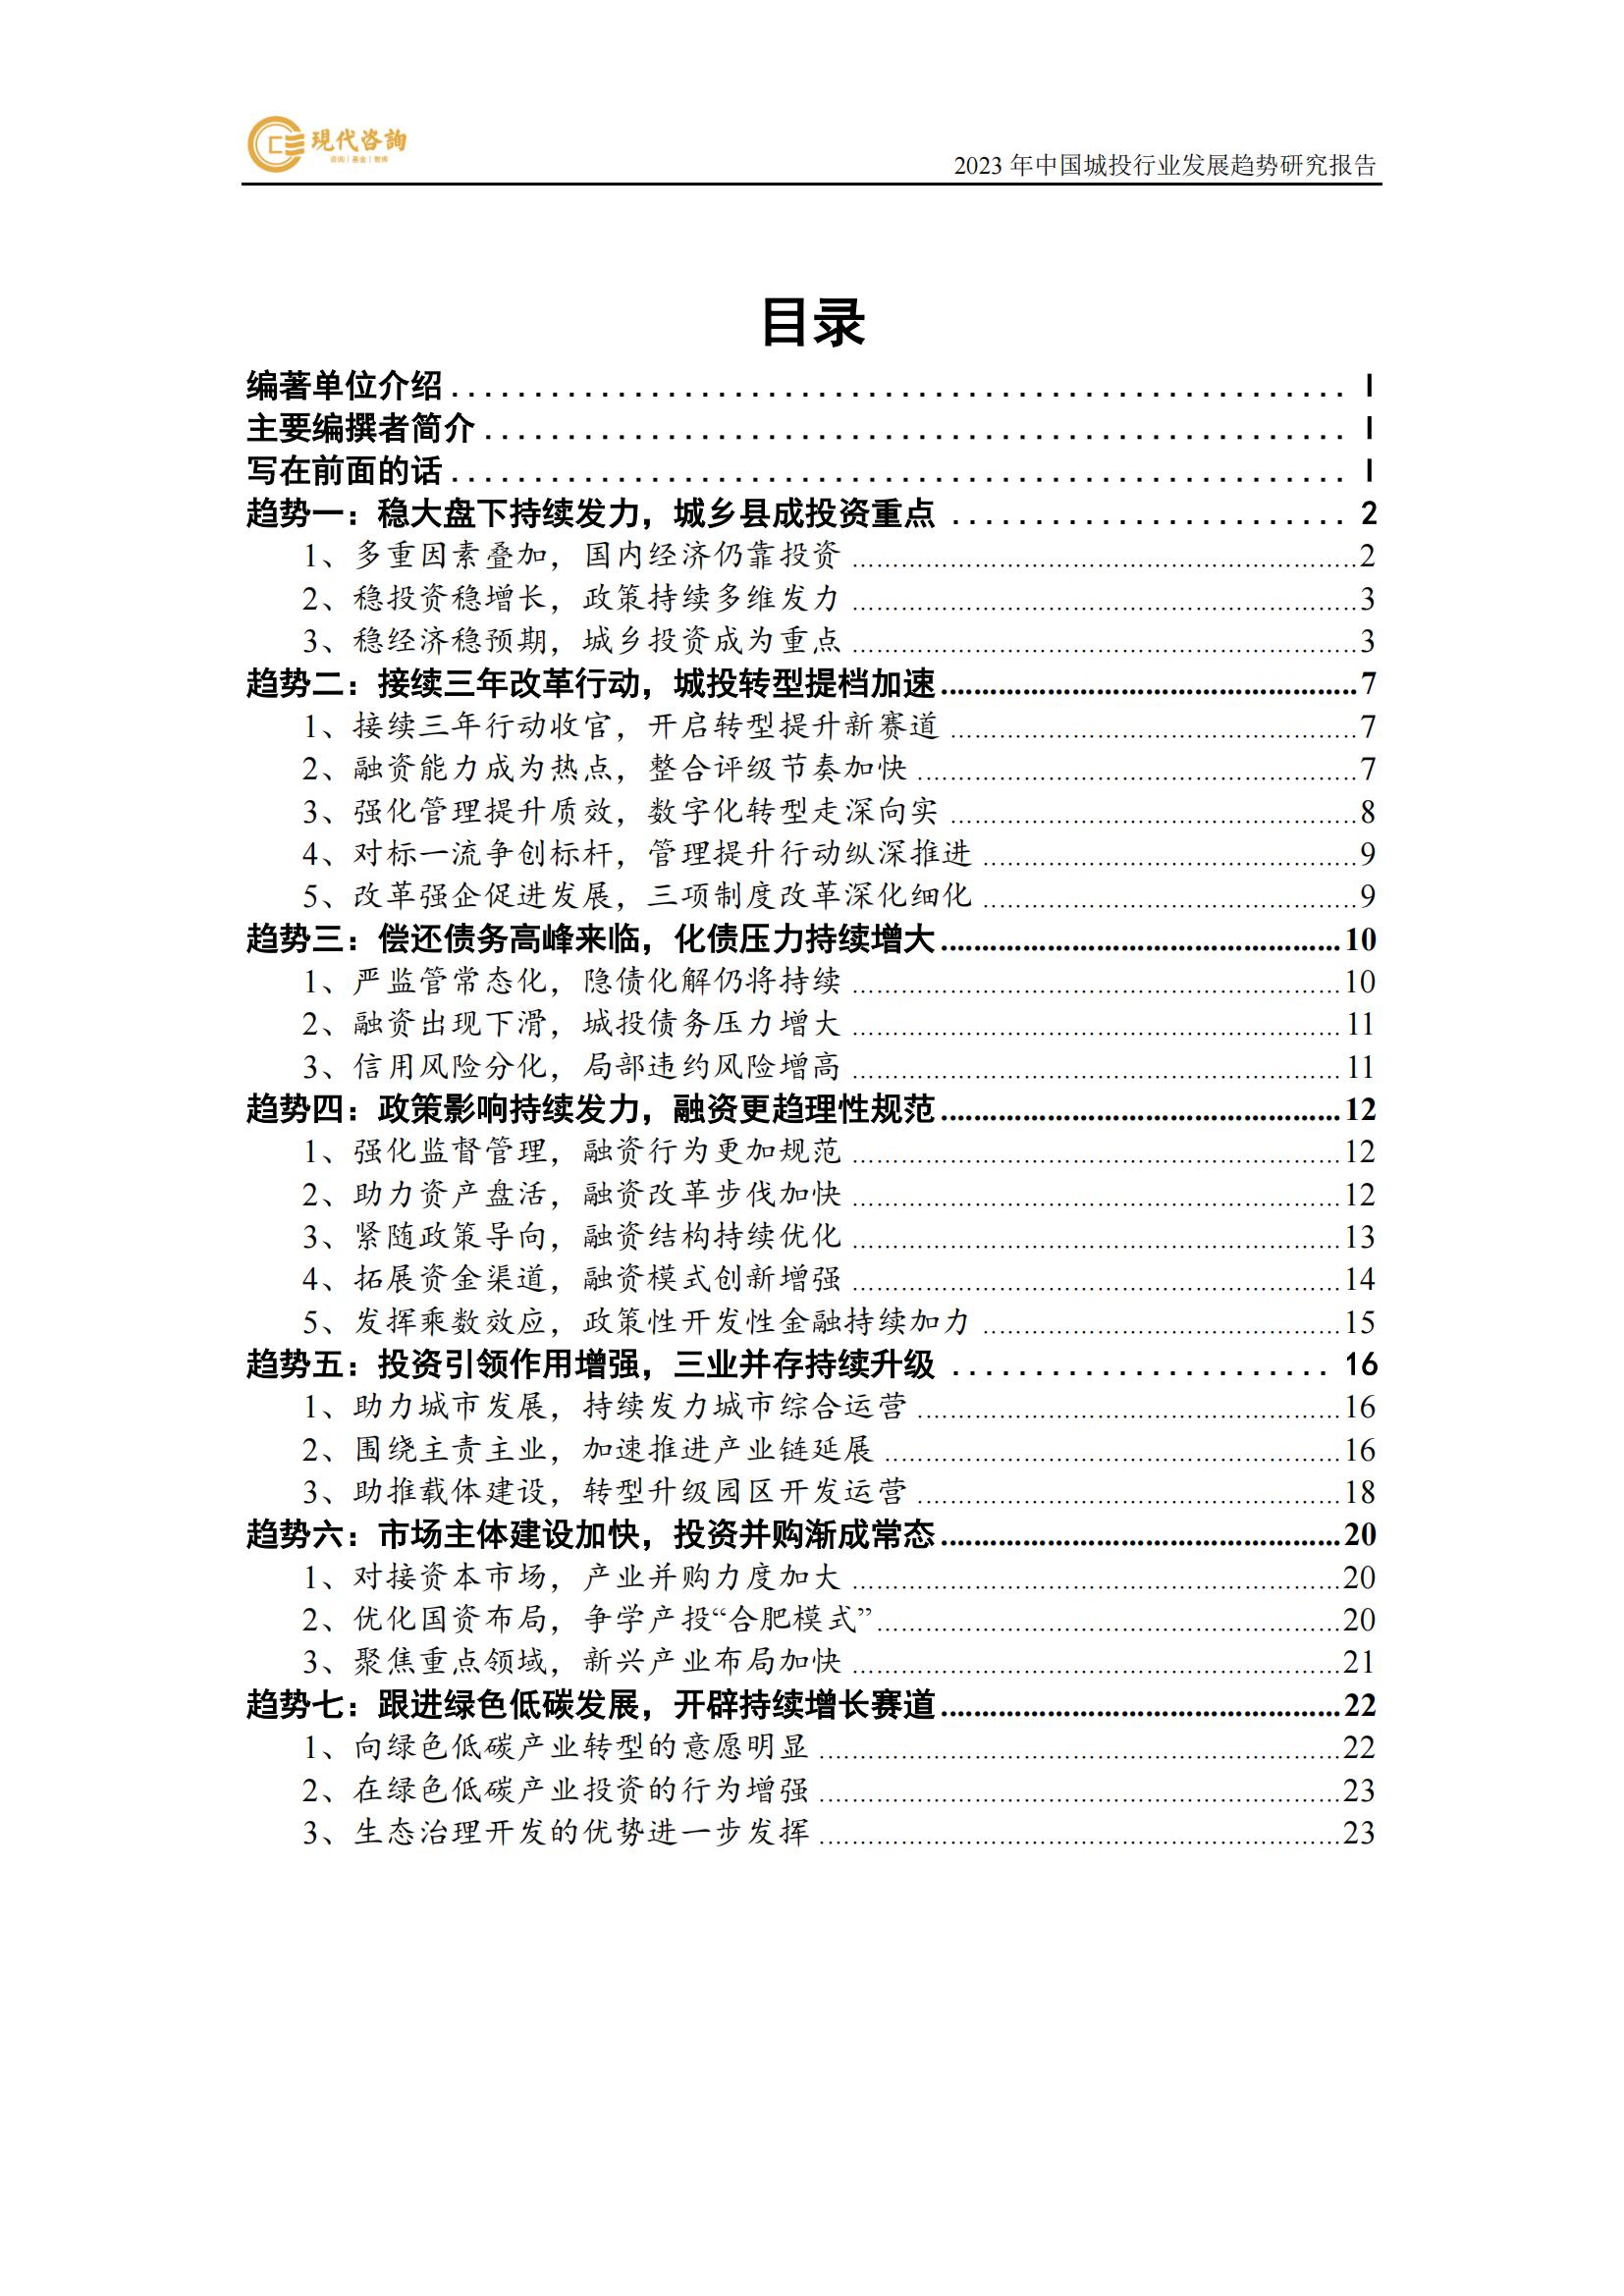 中国城投行业发展趋势研究报告（2023）(2)_07.jpg